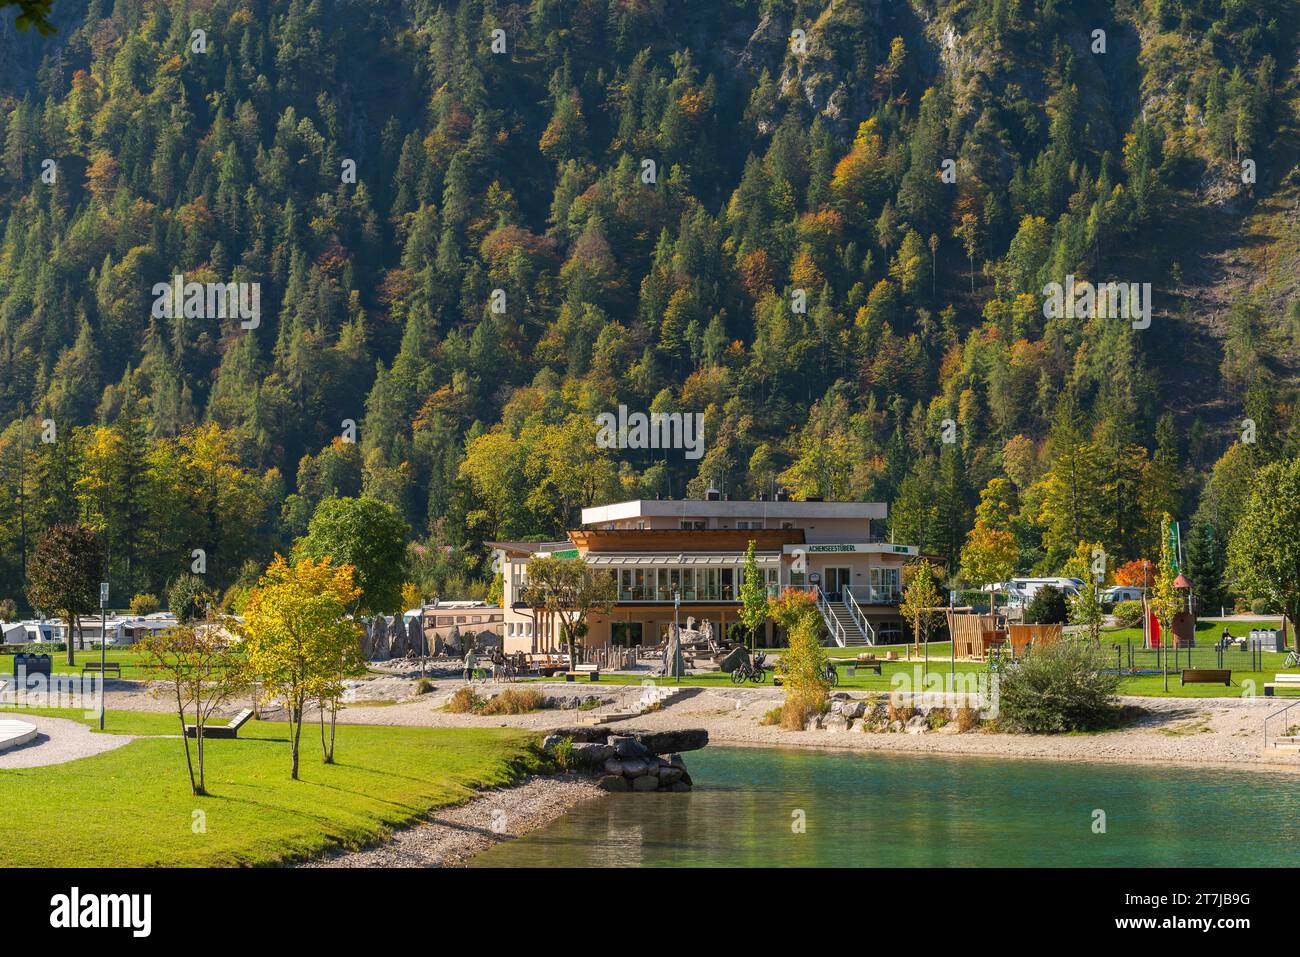 Site de caravane alpine dans la ville commerçante et station de vacances populaire Achenkirch sur le lac Achensee Tyrol, Autriche, Europe Banque D'Images